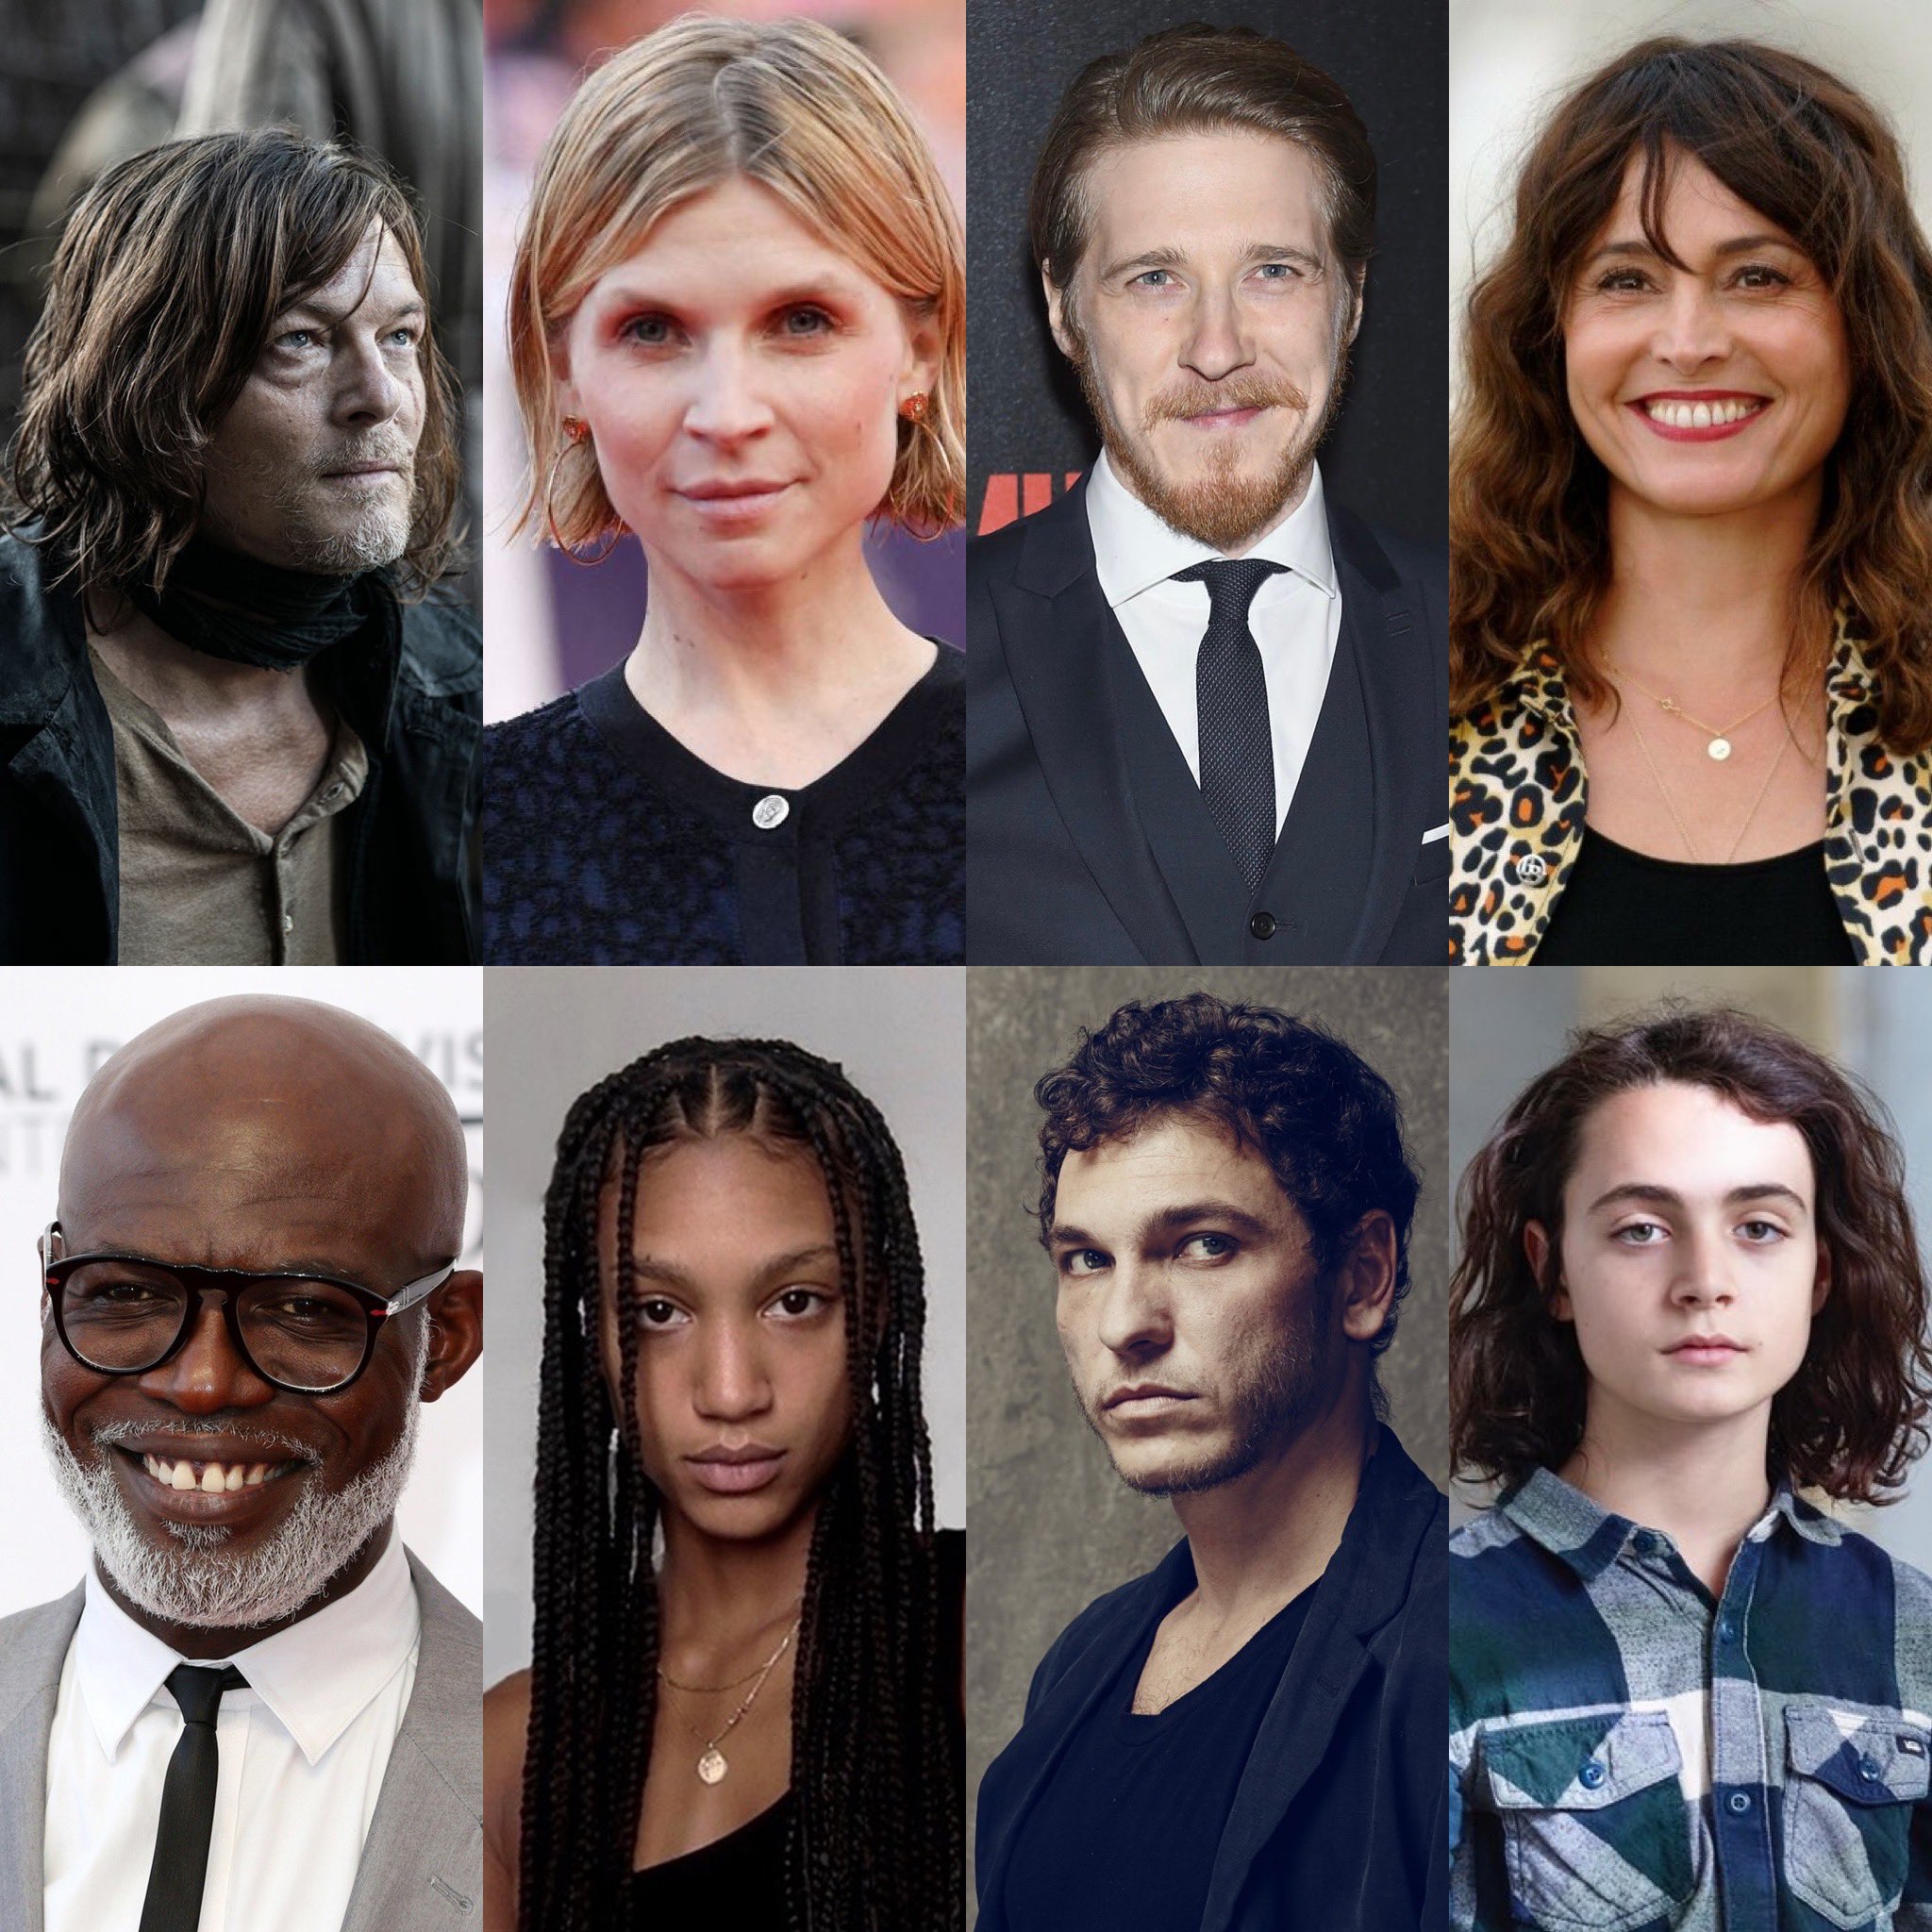 The Walking Dead: Daryl Dixon (TV) Cast - All Actors and Actresses